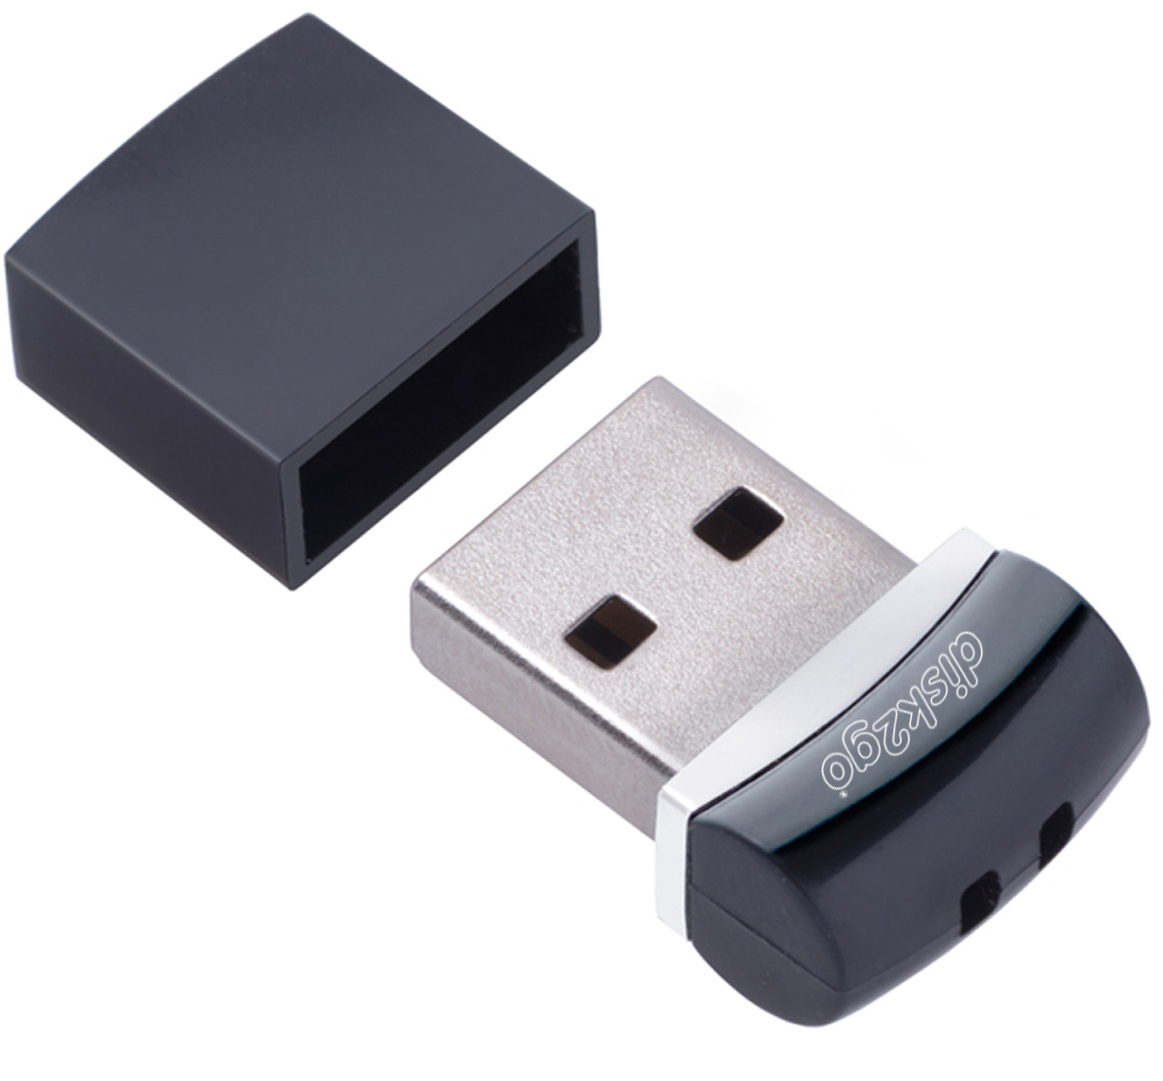 DISK2GO USB-Stick nano edge 3.0 32GB 30006681 USB 3.0